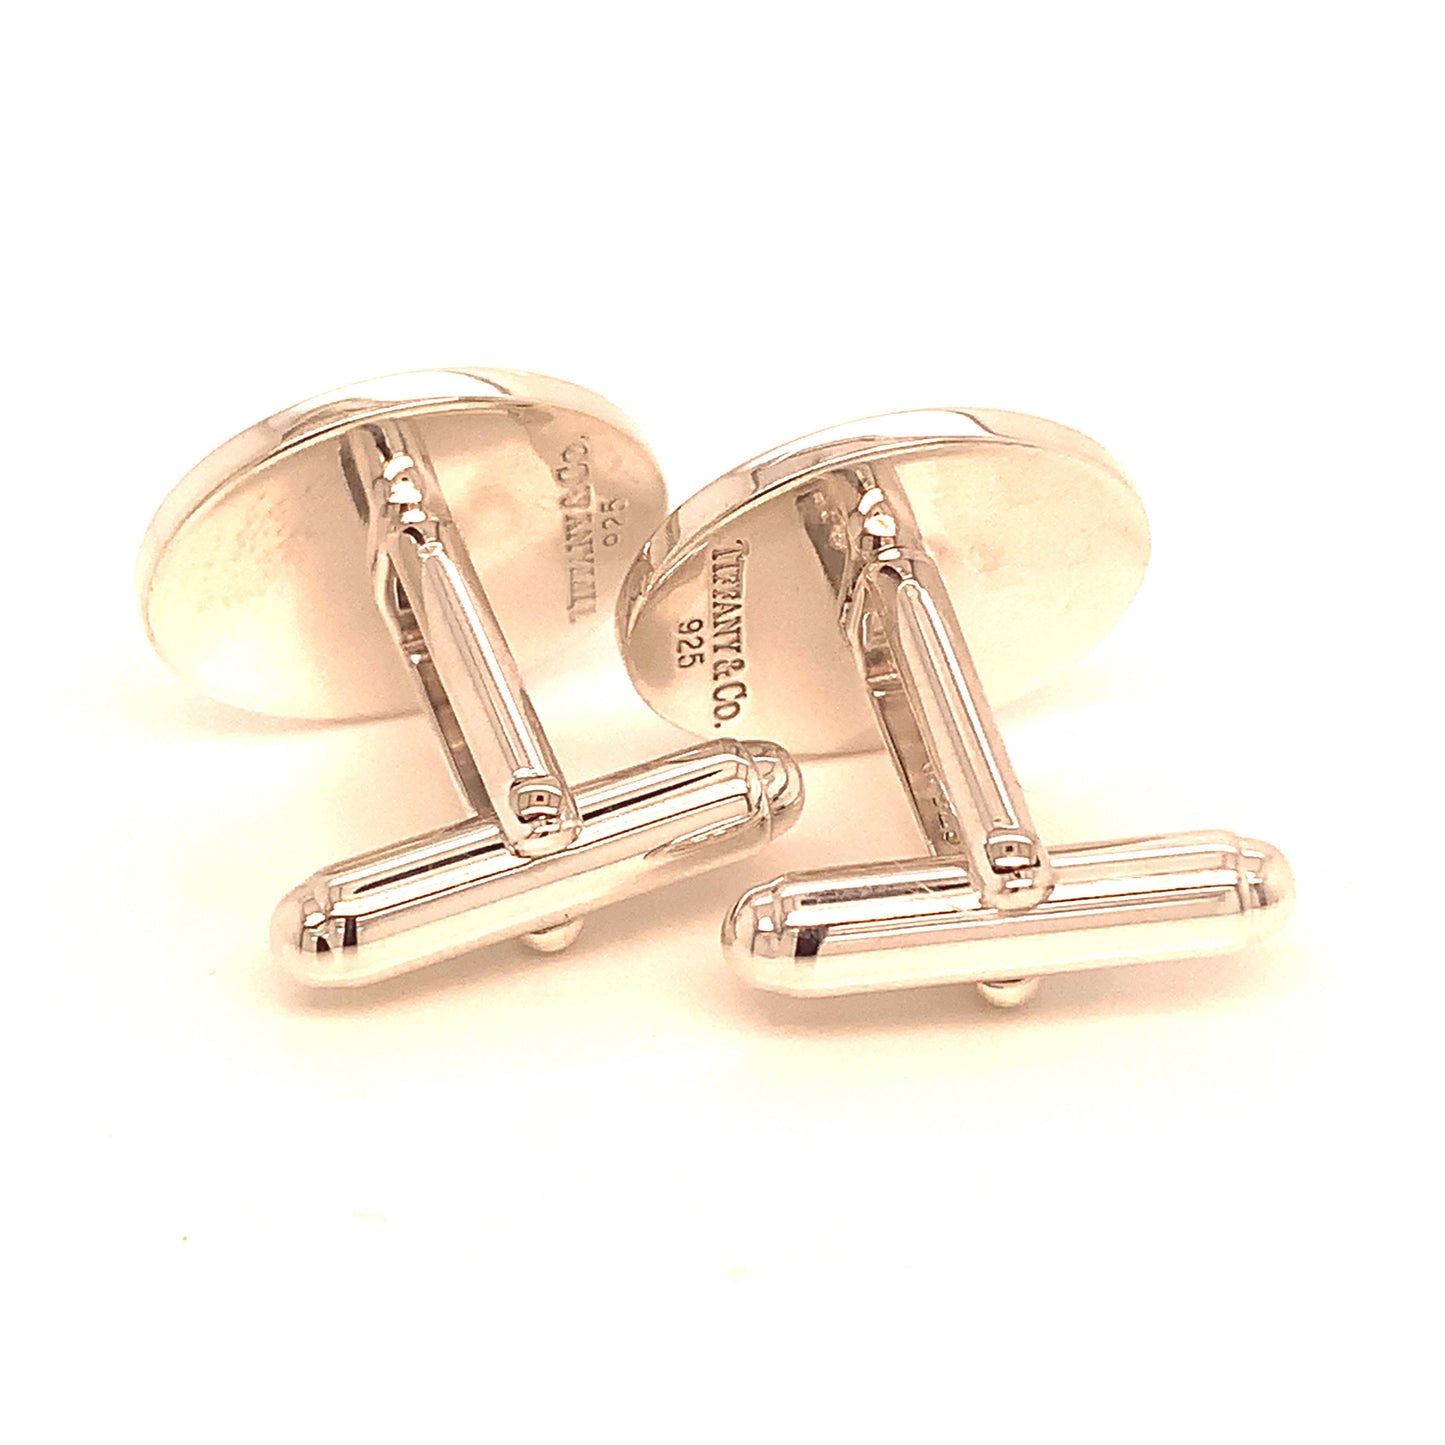 Tiffany & Co Estate Sterling Silver Oval Cufflinks 12.10 Grams TIF121 - Certified Fine Jewelry